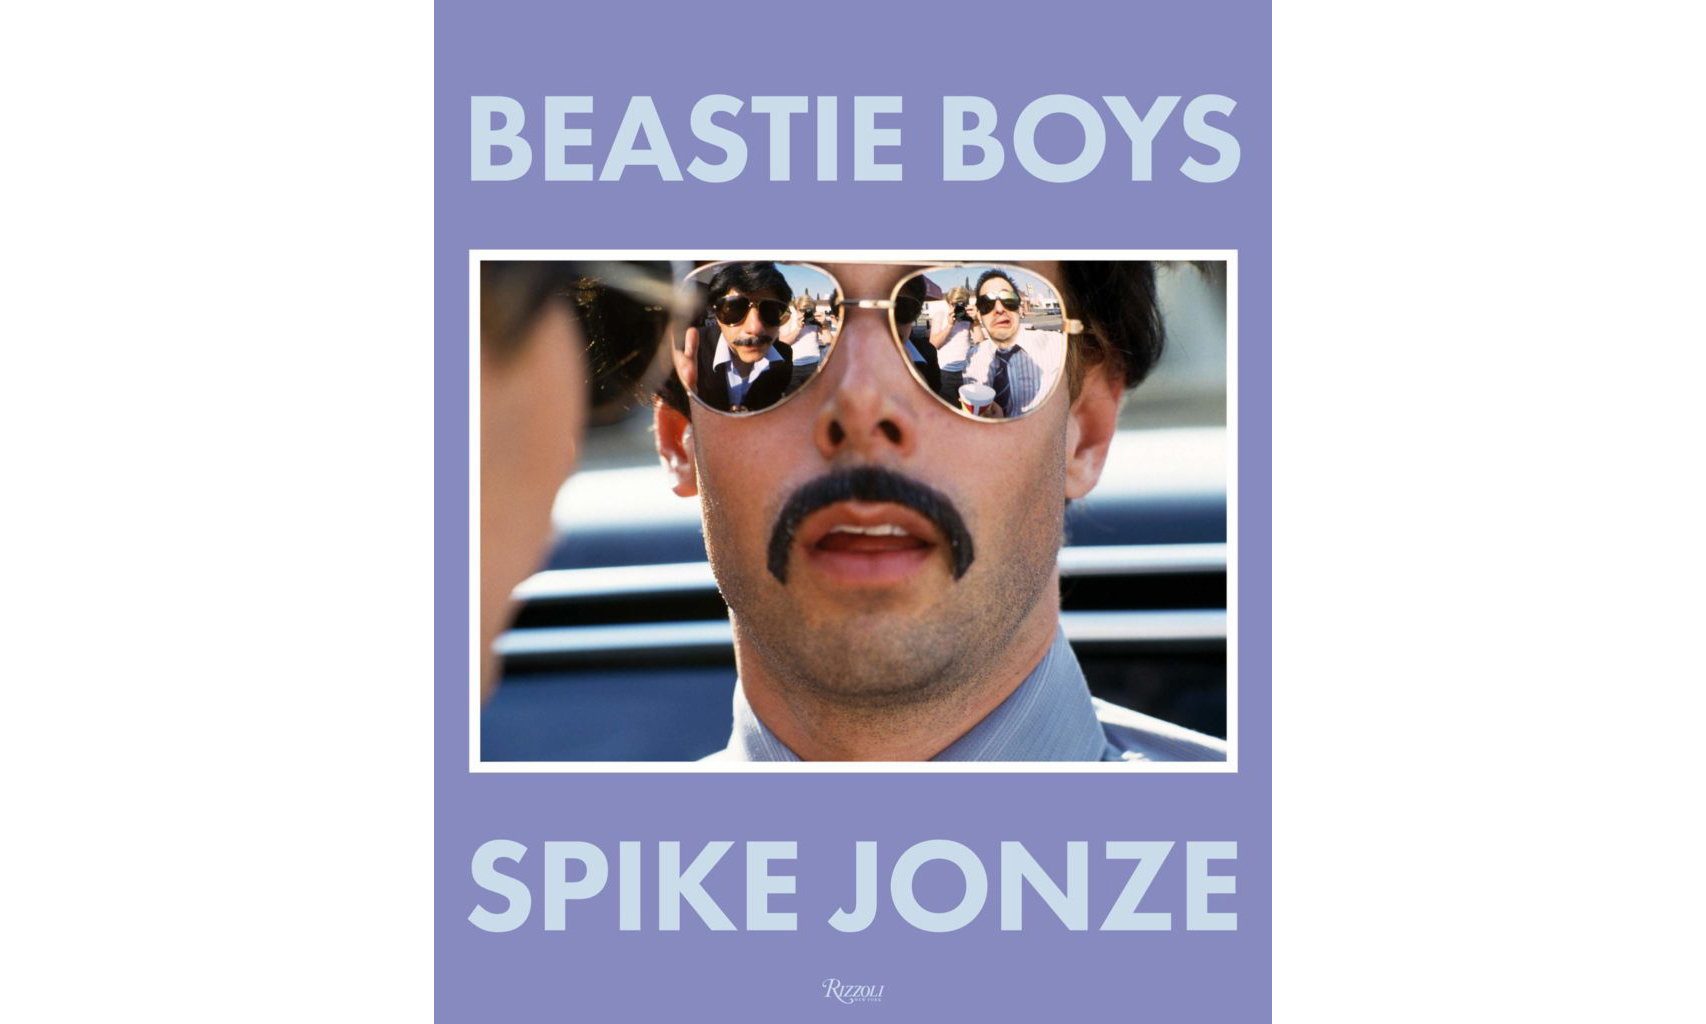 著名导演 Spike Jonze 将与 Beastie Boys 乐队合作出版写真集